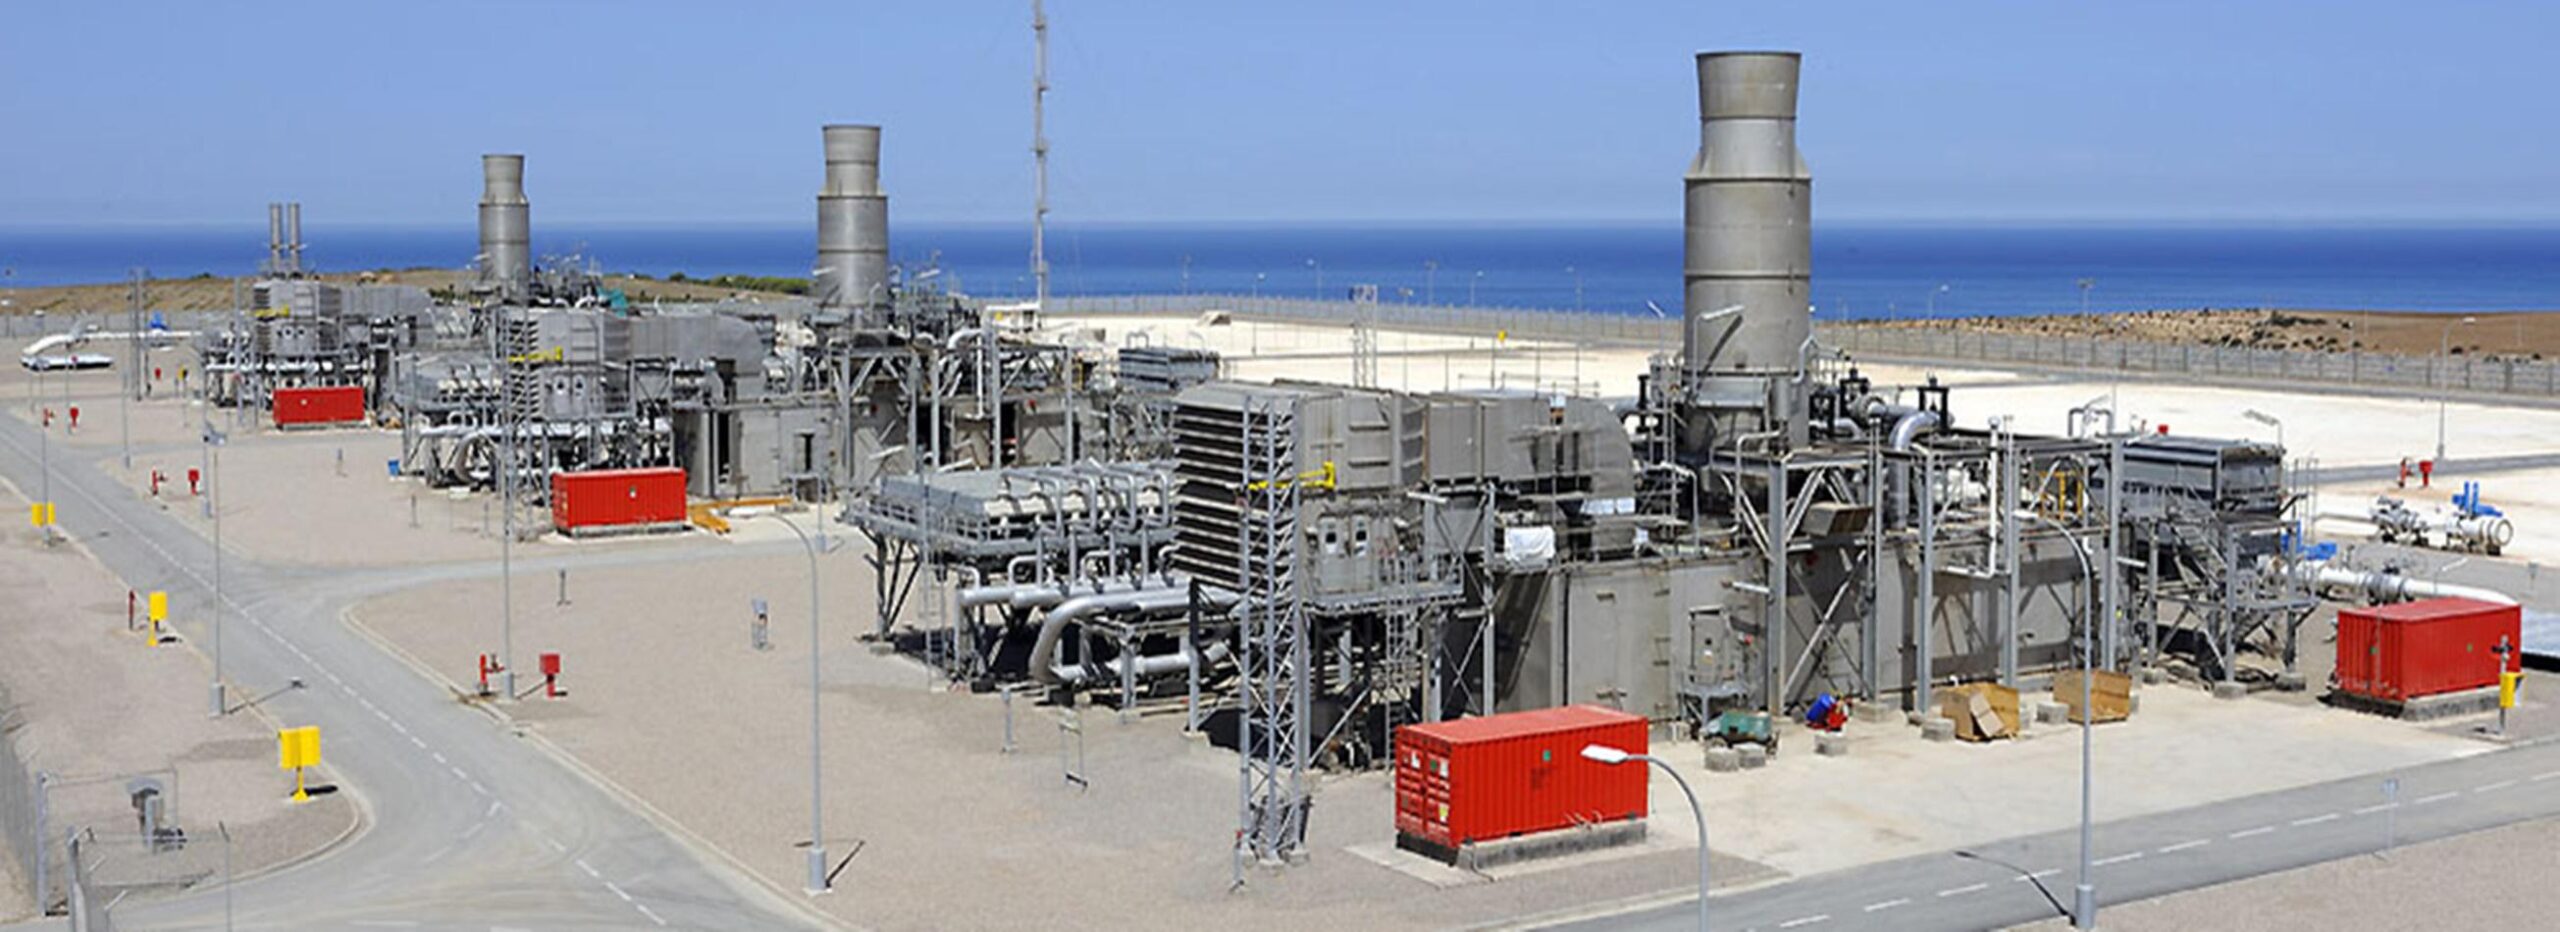 L’interruption des fournitures de gaz algérien à l’Europe